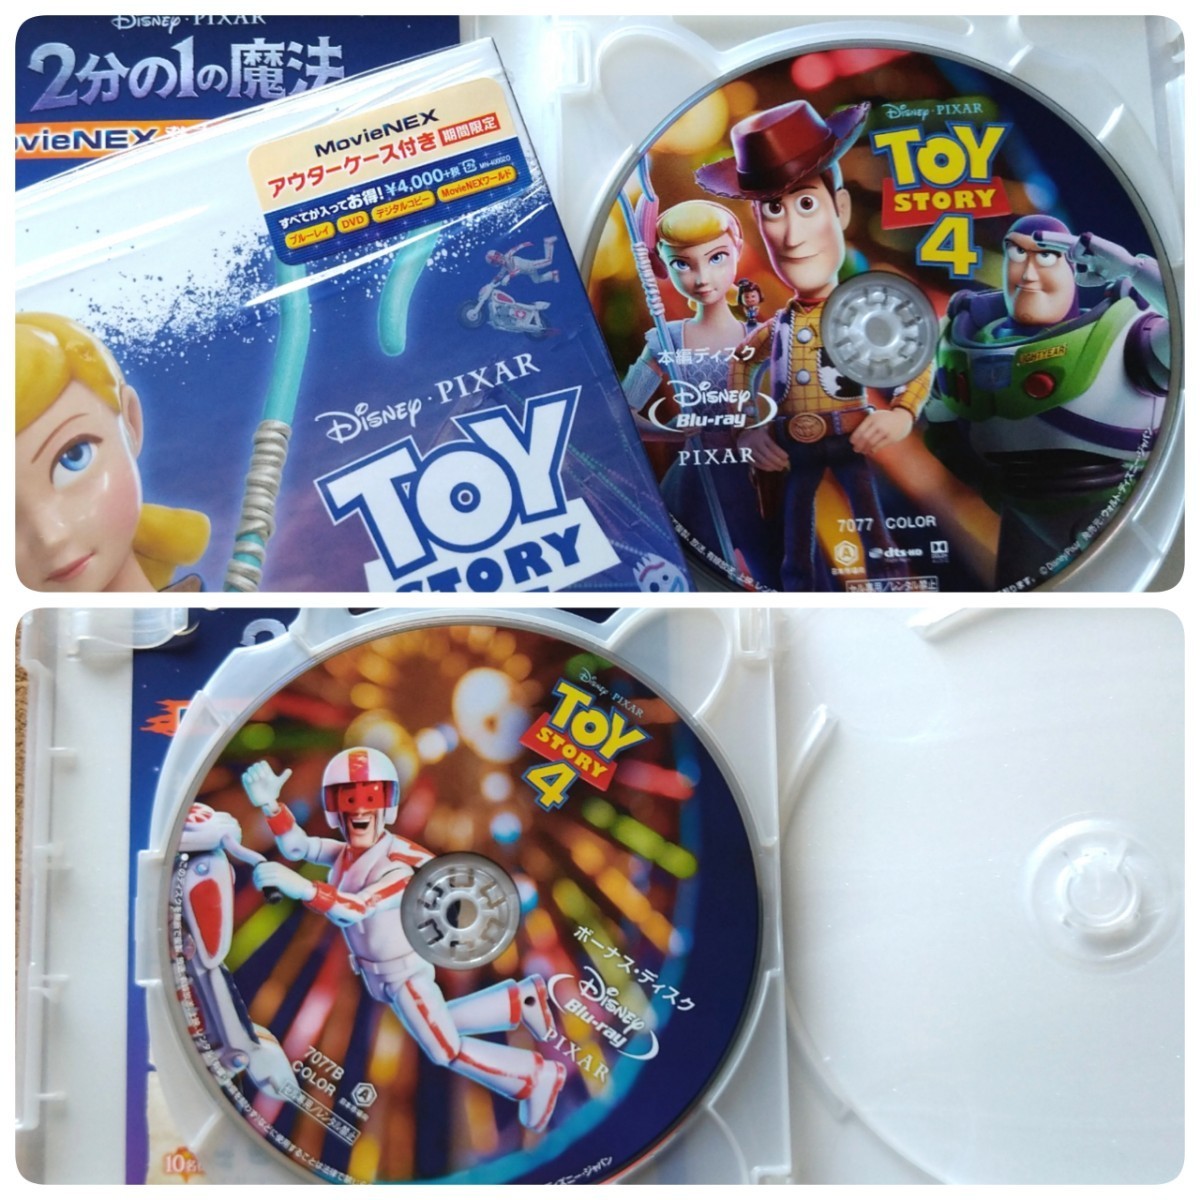 トイ・ストーリー4 MovieNEX Blu-ray